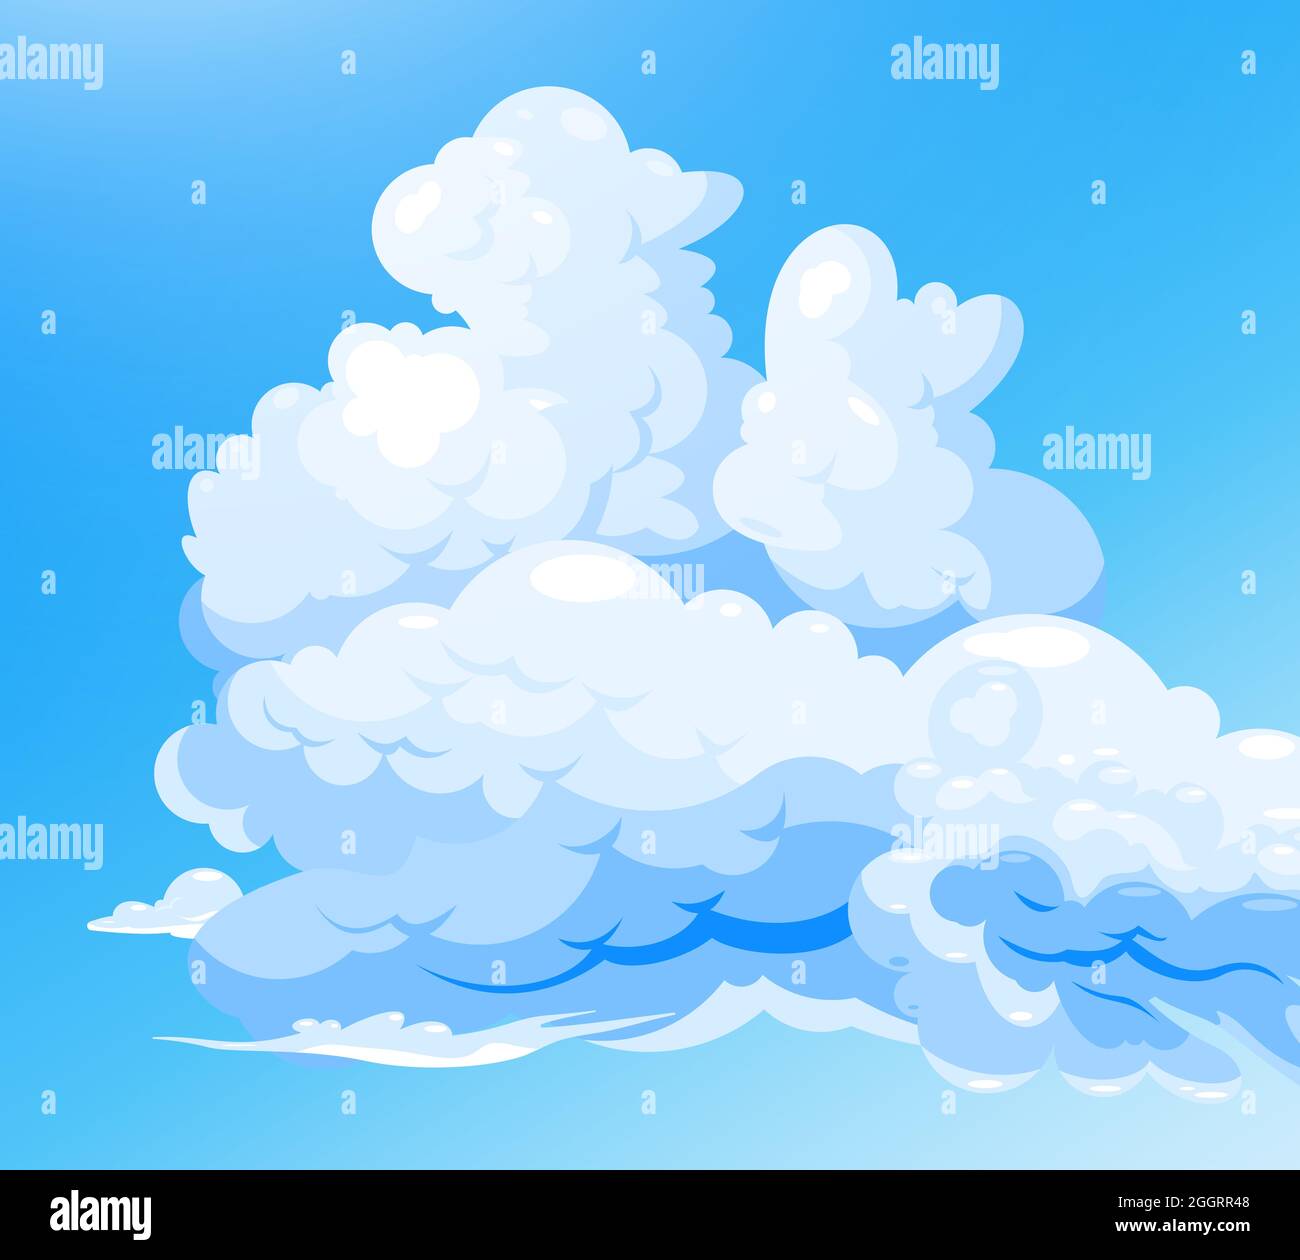 Wolkiger Himmel blauer Hintergrund mit Cartoon-Gruppe von weißen Cumulus Wolken flachen Vektor-Illustration Stock Vektor